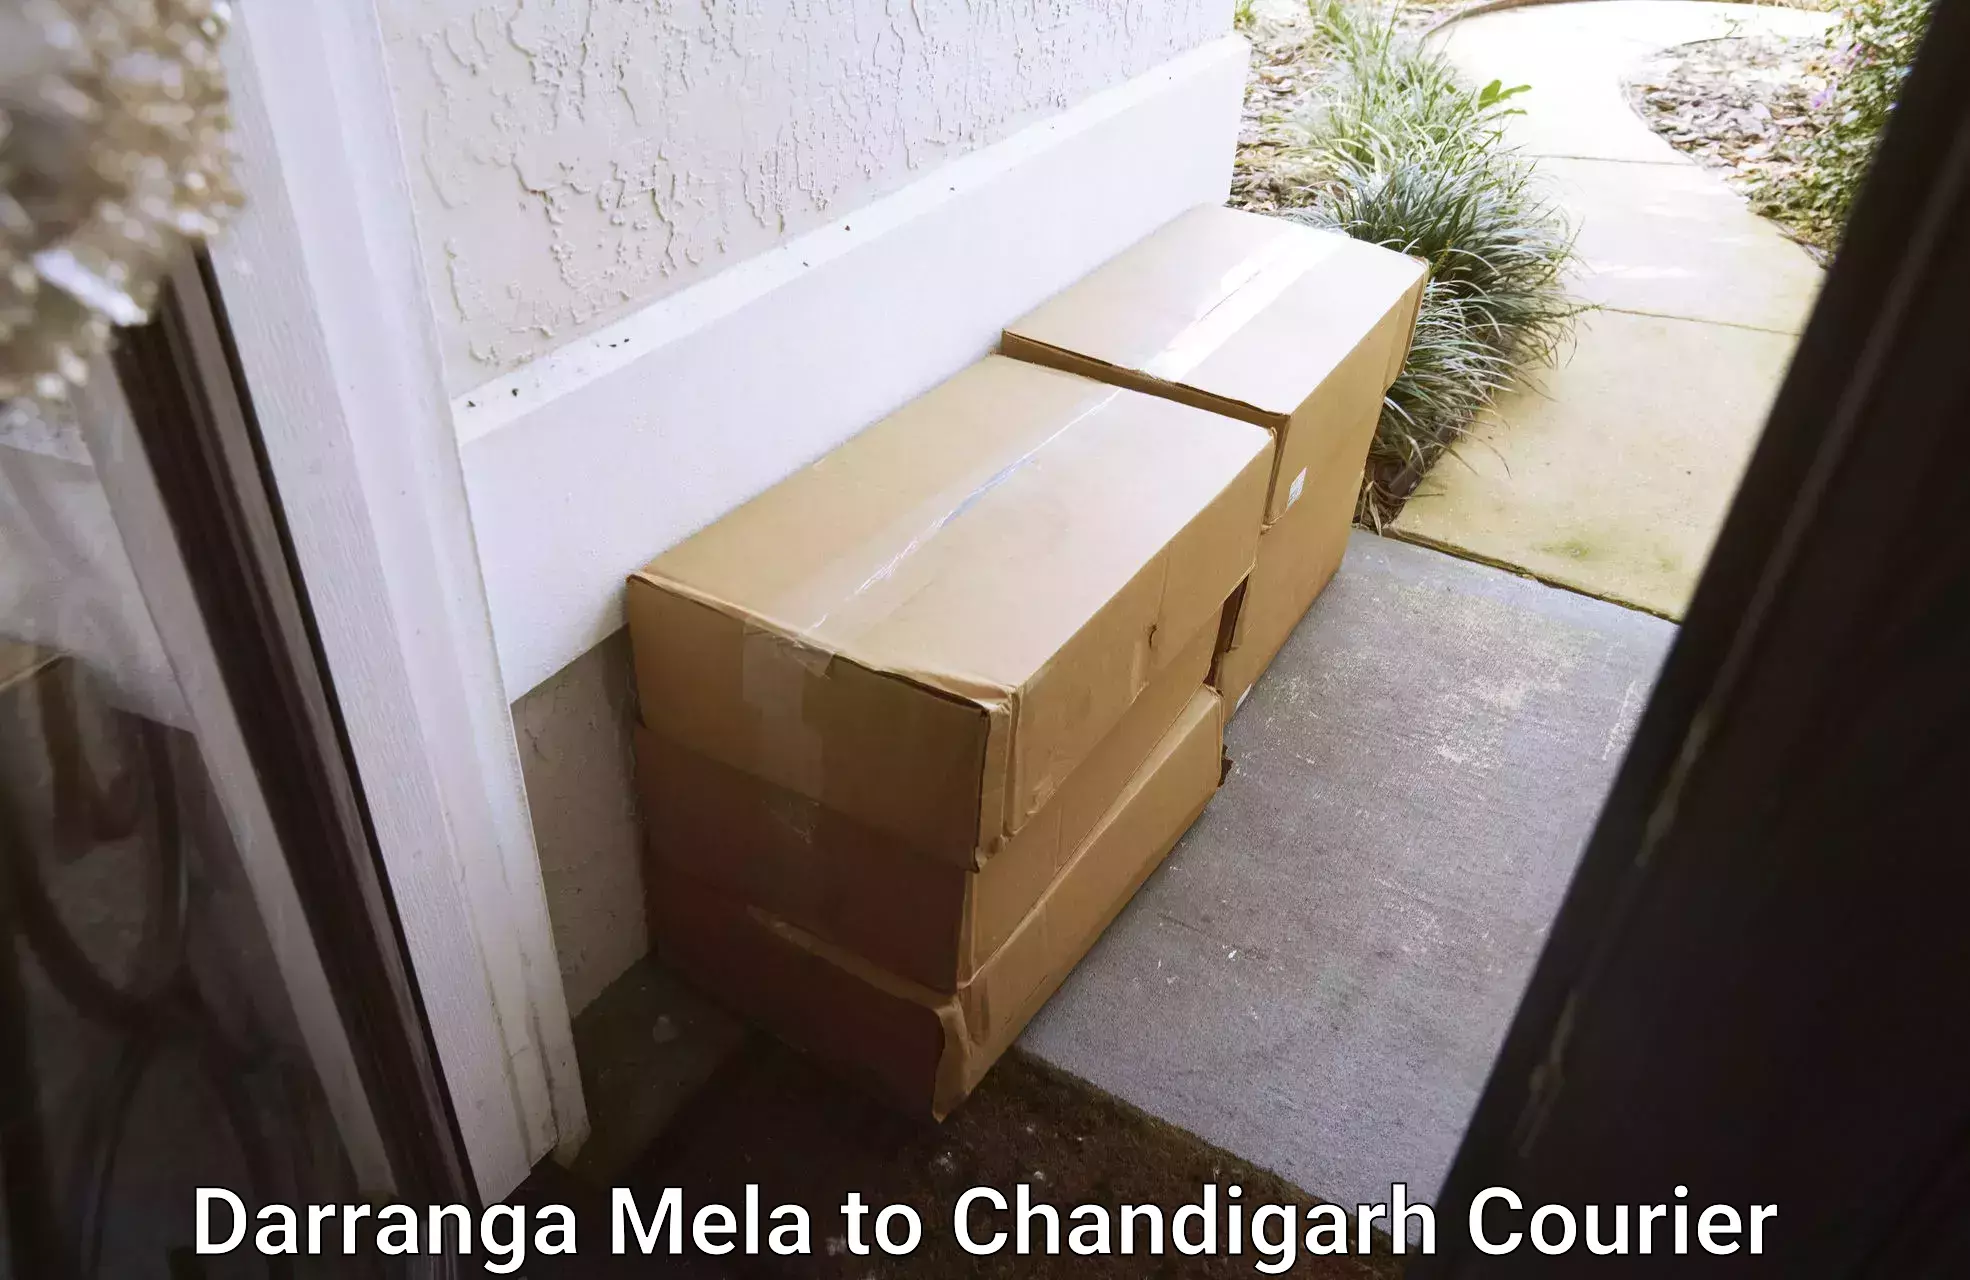 Reliable courier service Darranga Mela to Chandigarh